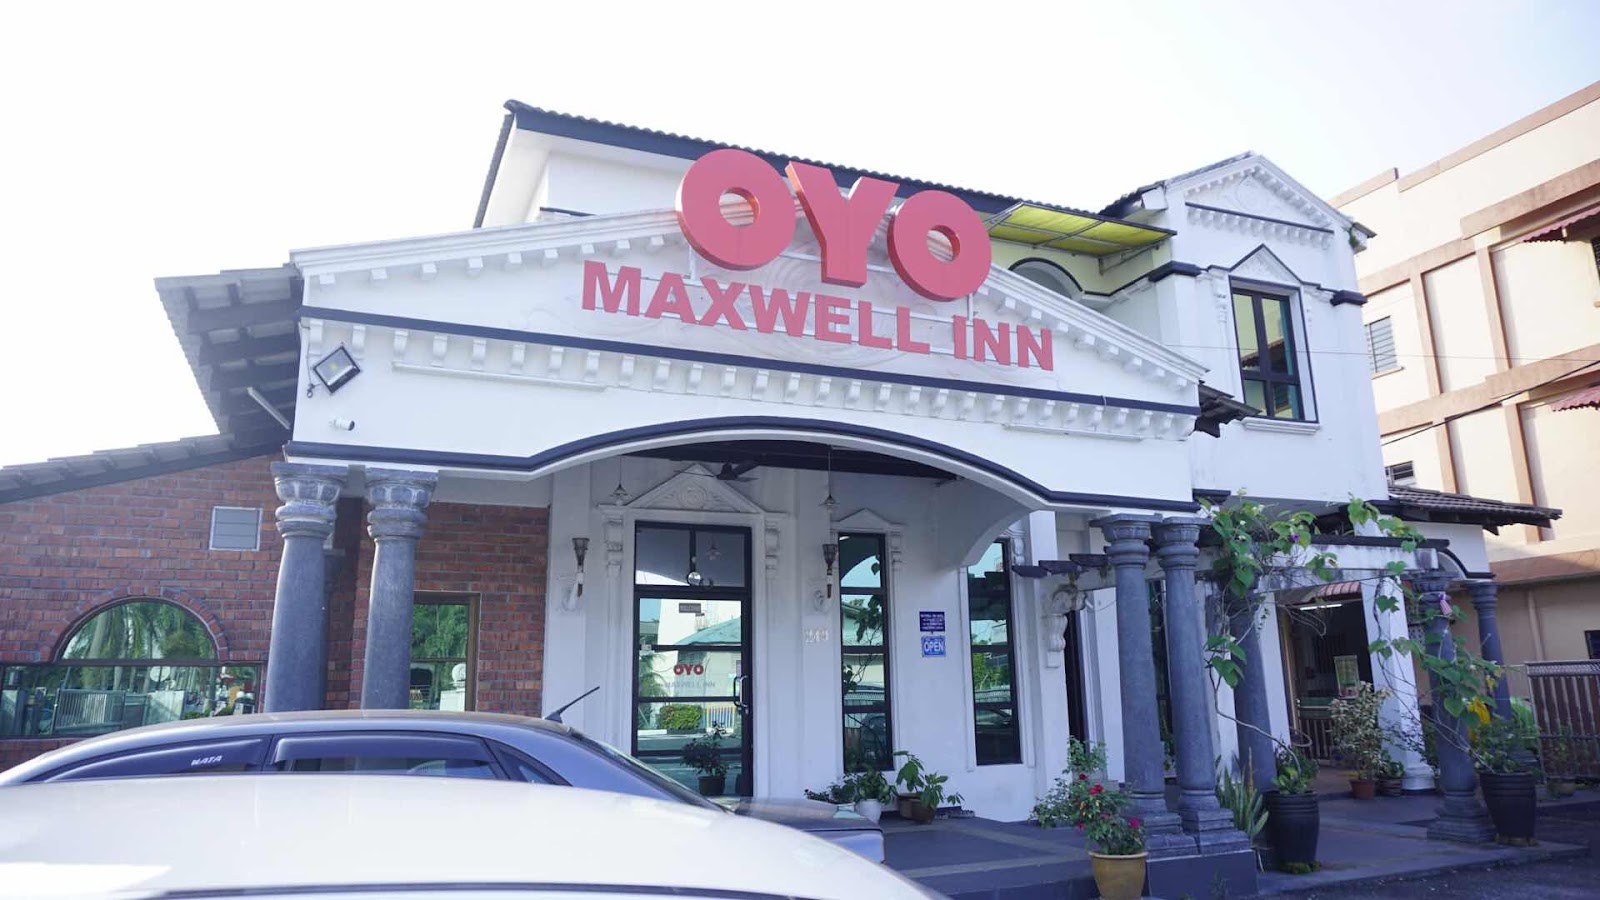 Pengalaman seram menginap di oyo hotel maxwell inn Taiping Perak